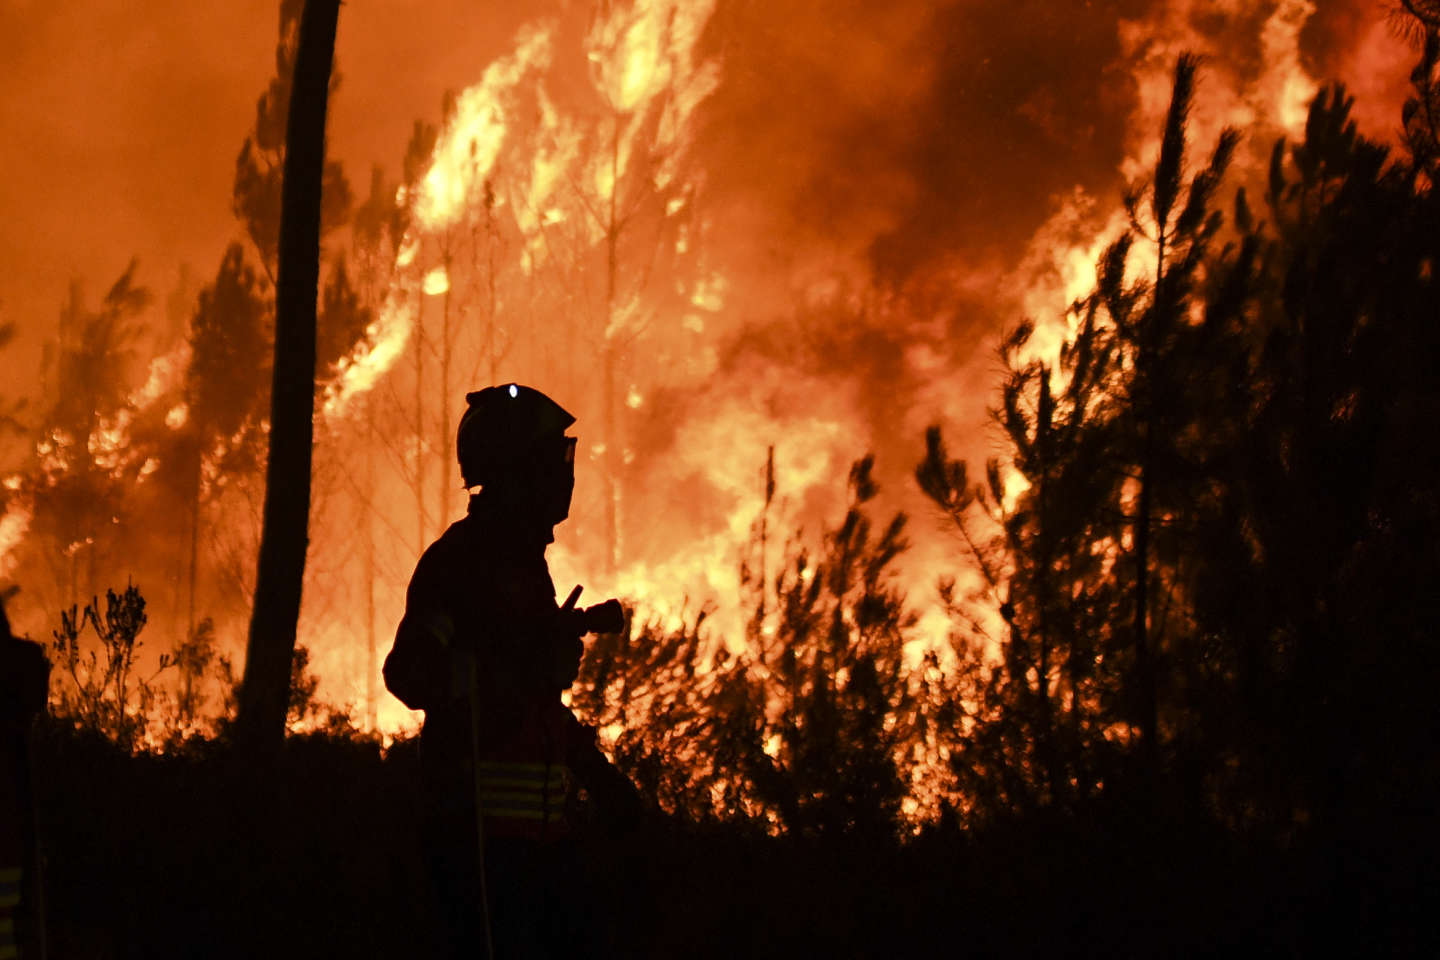 Les incendies de forêt, un casse-tête scientifique